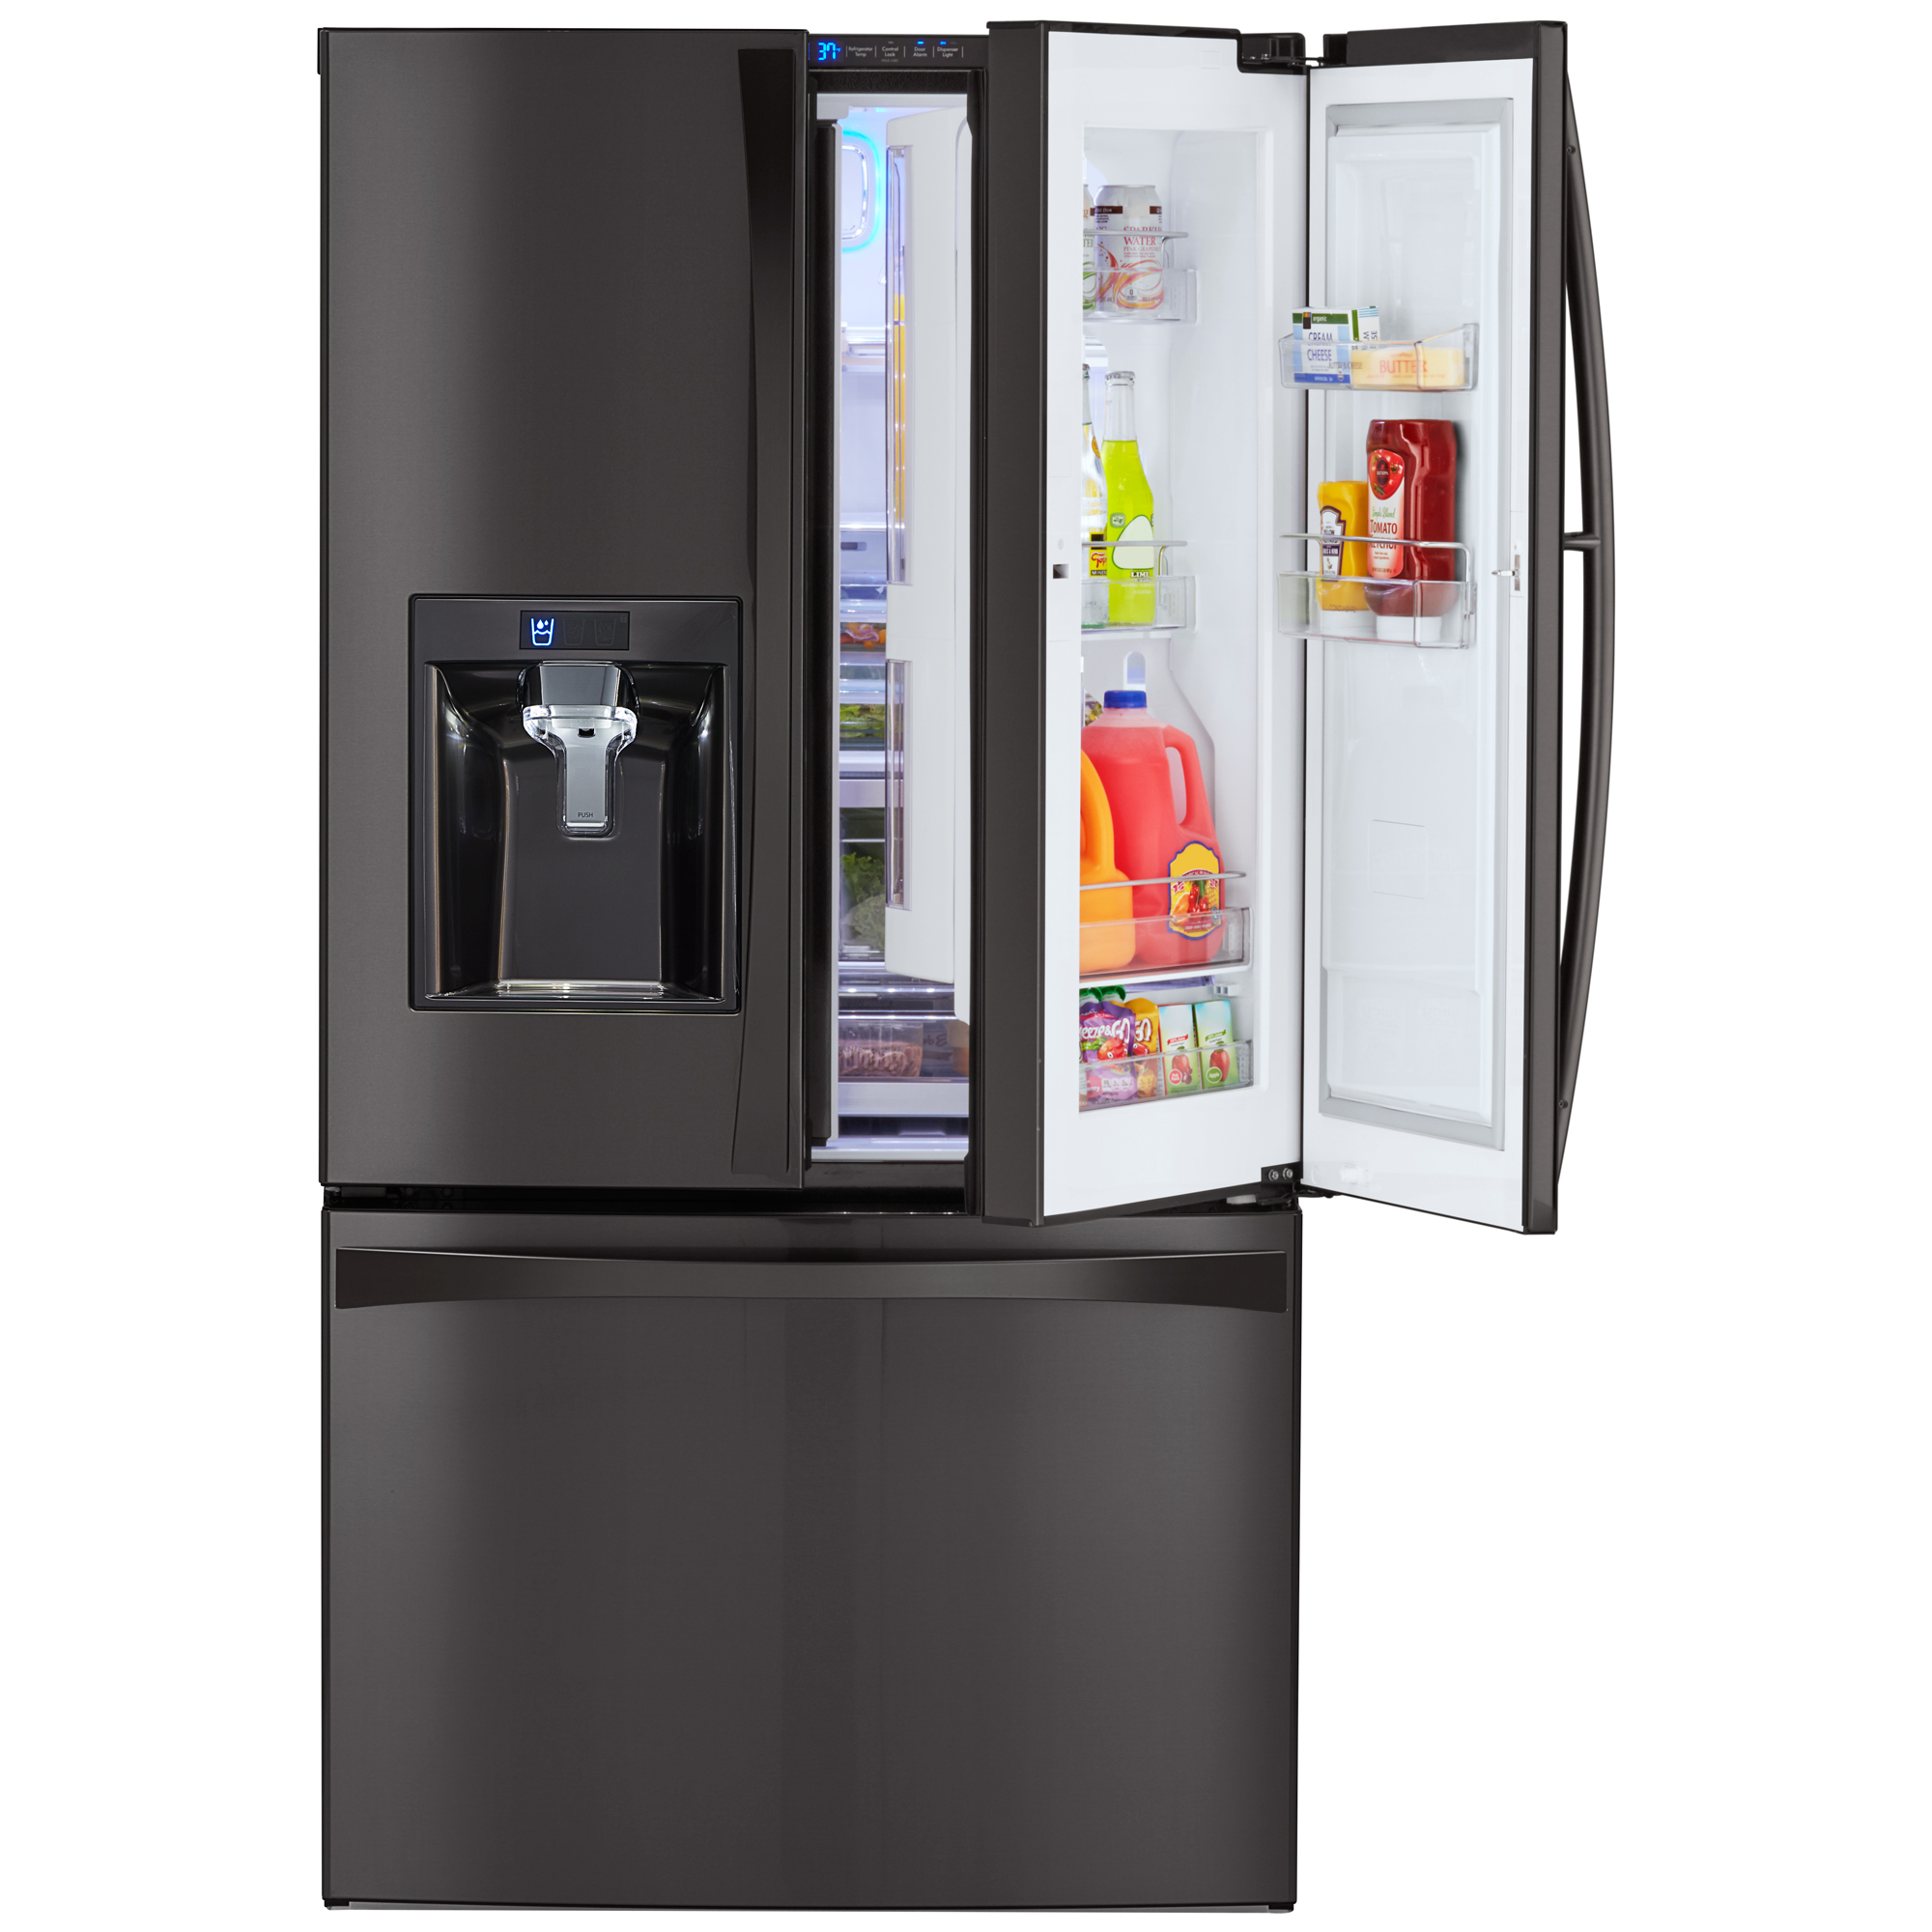 Kenmore Elite 73167 285 Cu Ft French Door Bottom Freezer Refrigerator W Grabngo Door Black Stainless Steel image